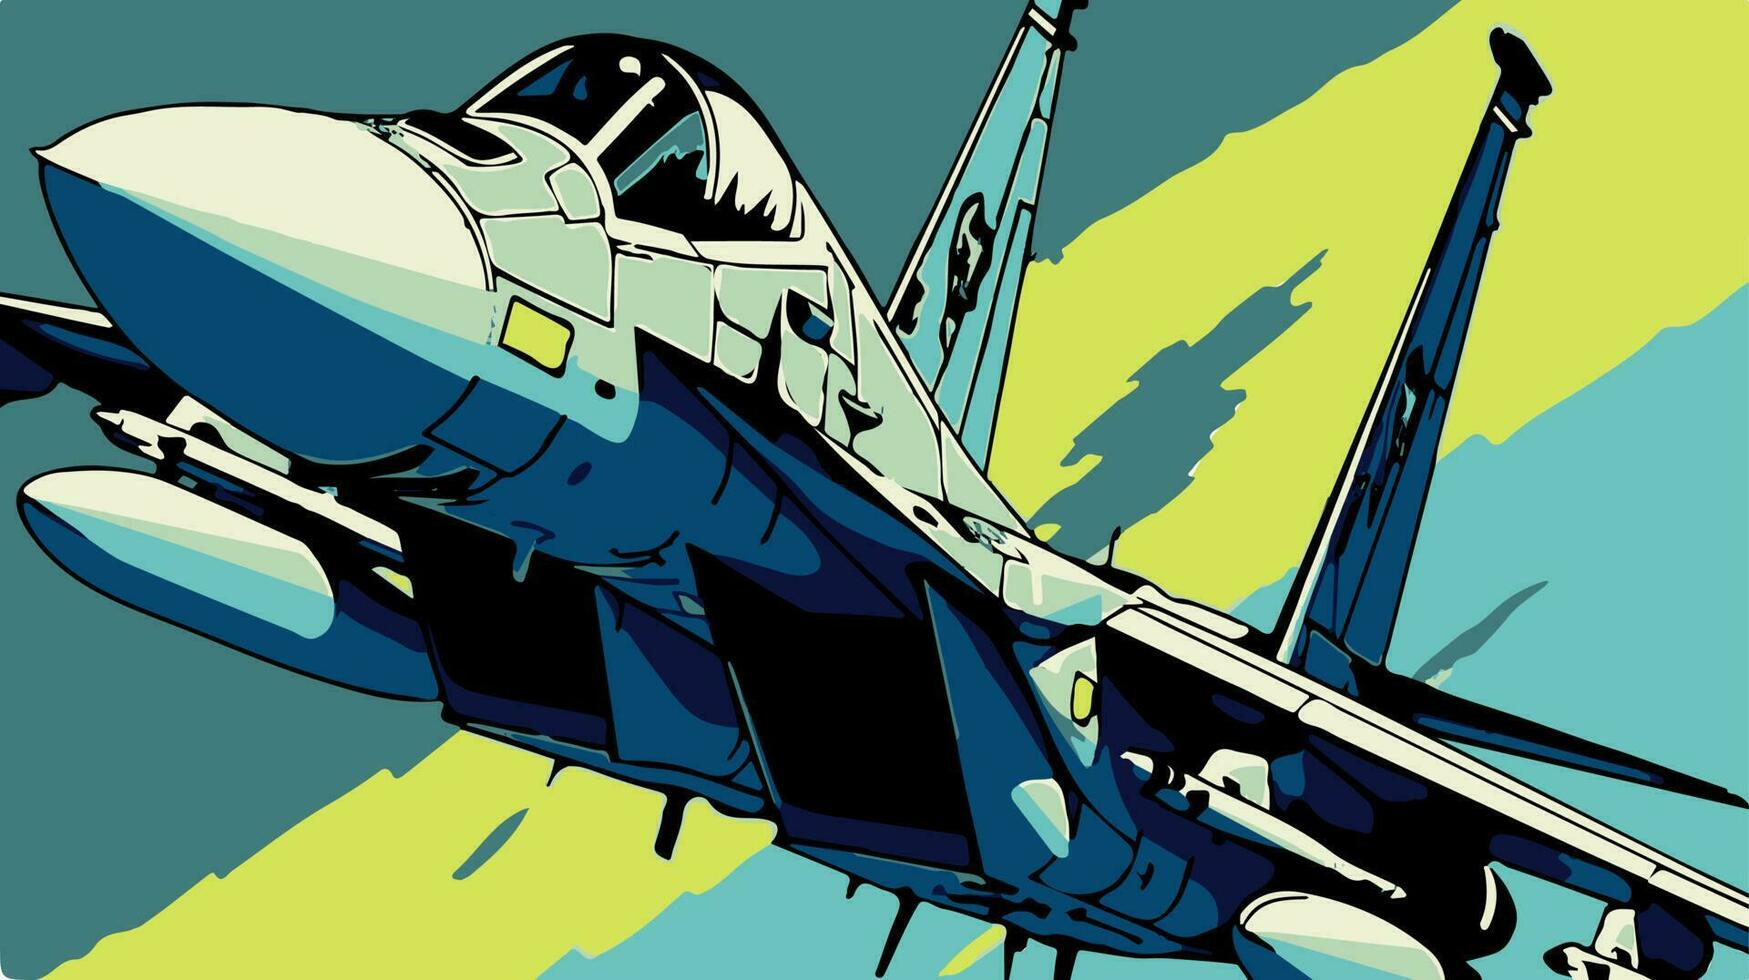 colorato illustrazione di f-15 militare aereo. pop arte di comico vettore disegno di veloce esercito